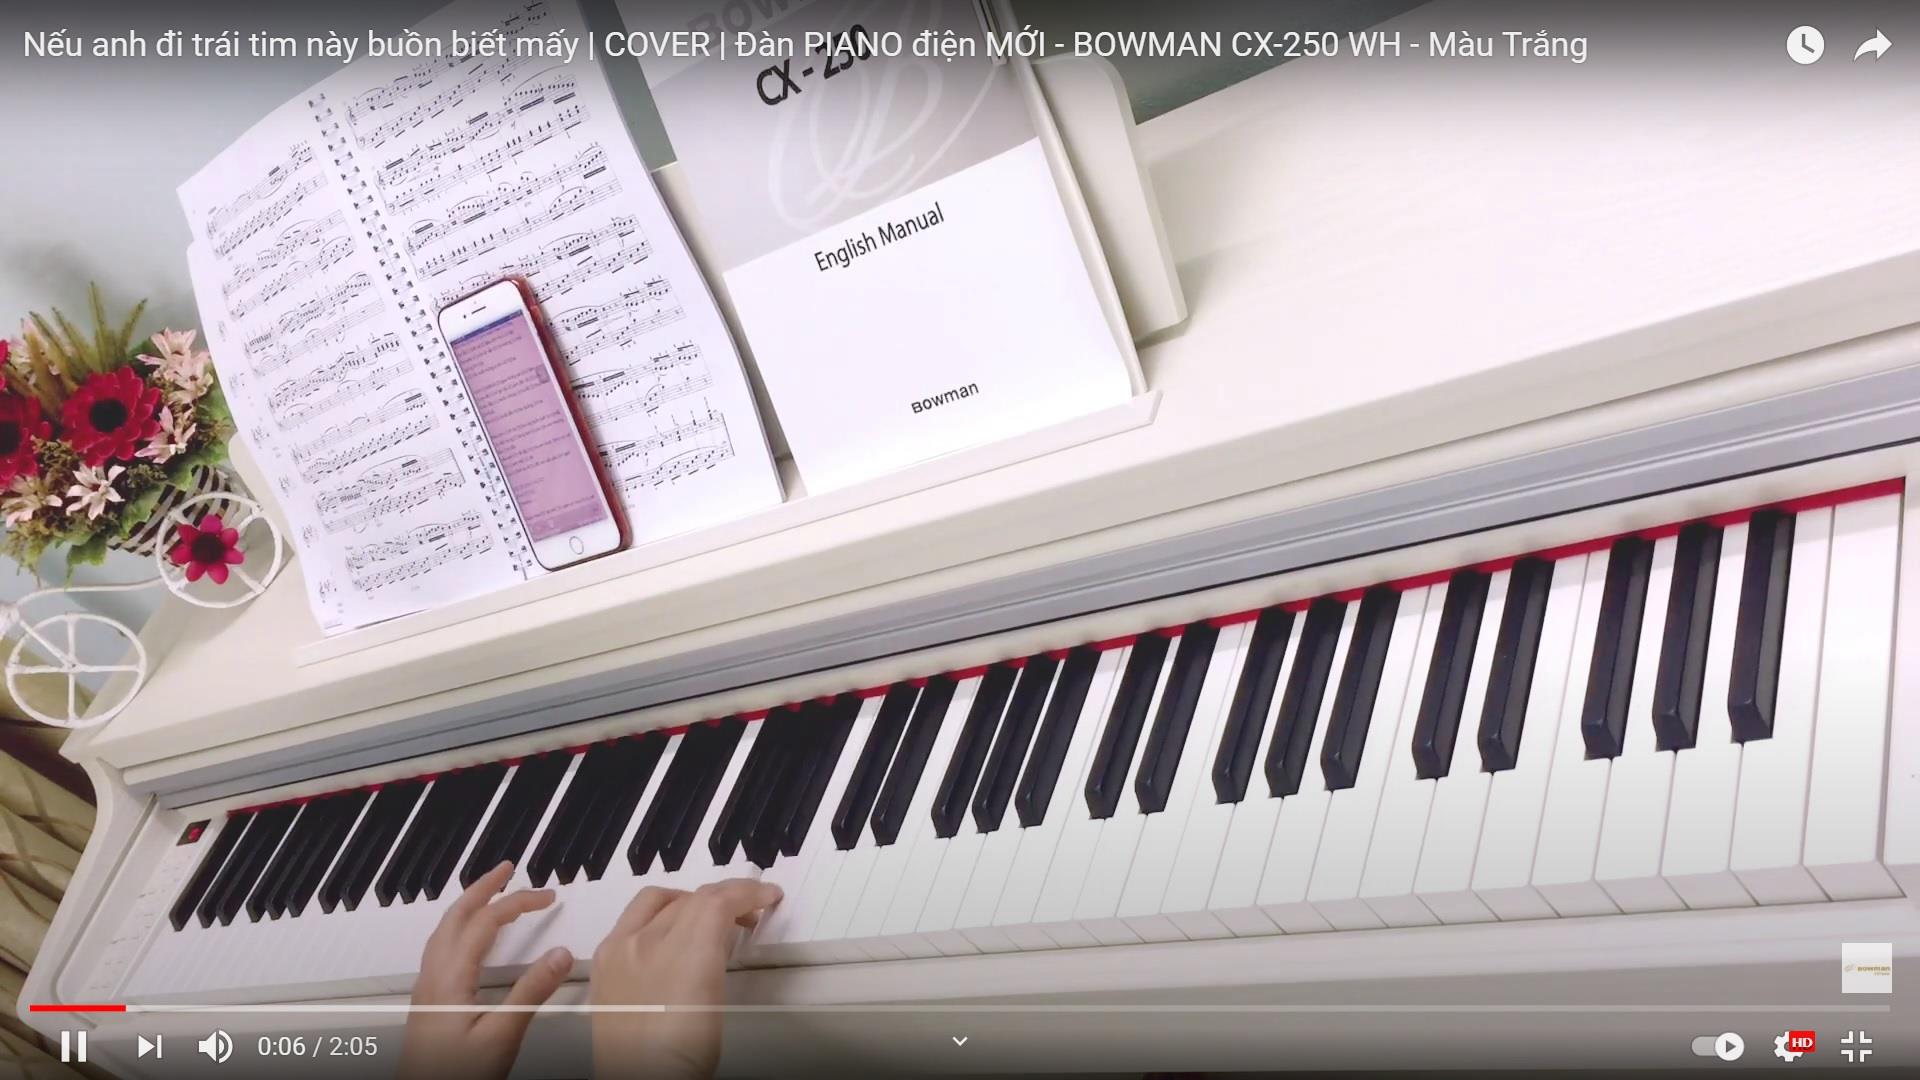 [ DEMO ] - Video giới thiệu chức năng Touch & Record đàn PIANO điện MỚI - BOWMAN CX-200 - màu đen